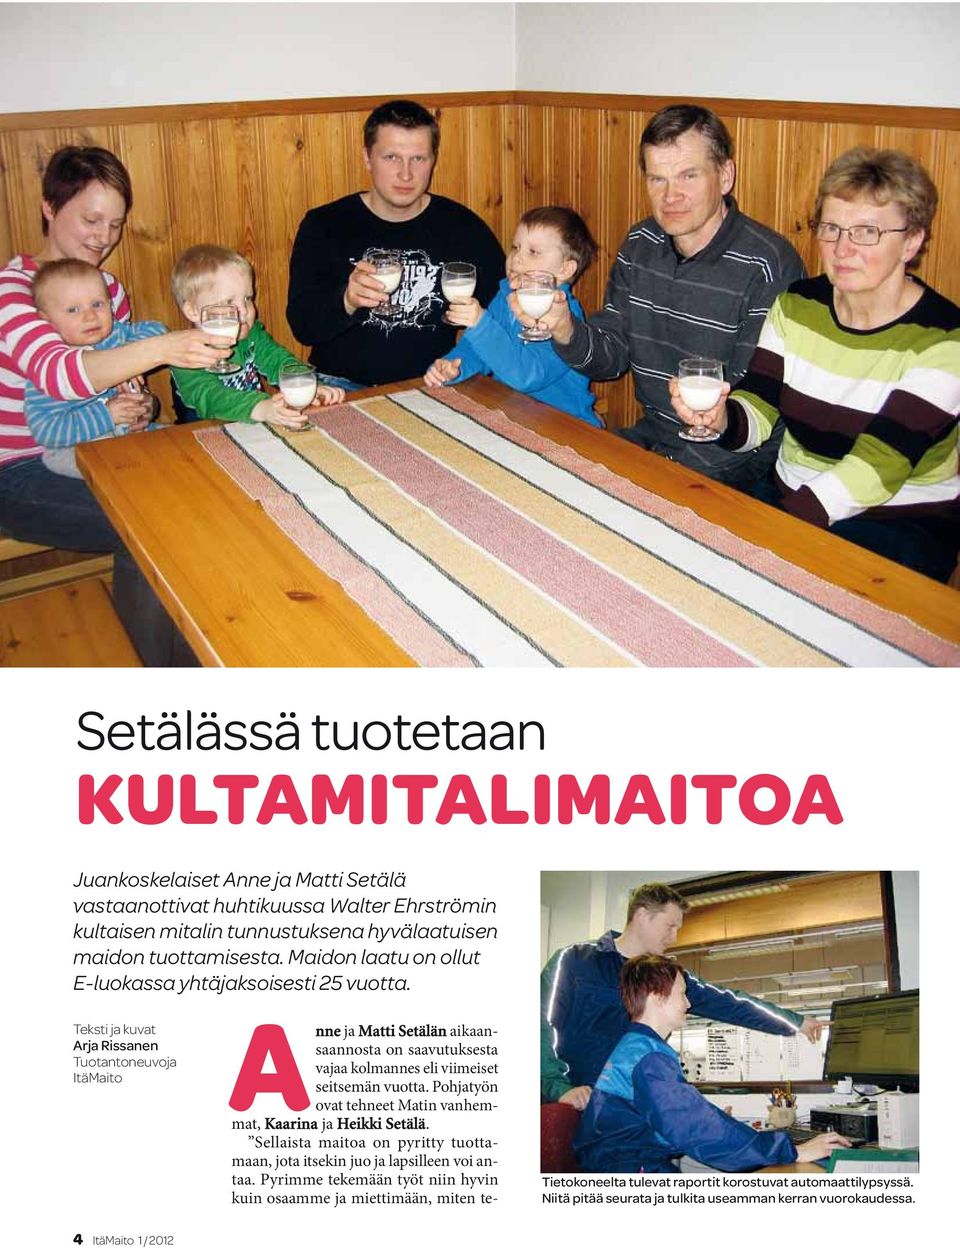 Teksti ja kuvat Arja Rissanen Tuotantoneuvoja ItäMaito Anne ja Matti Setälän aikaansaannosta on saavutuksesta vajaa kolmannes eli viimeiset seitsemän vuotta.